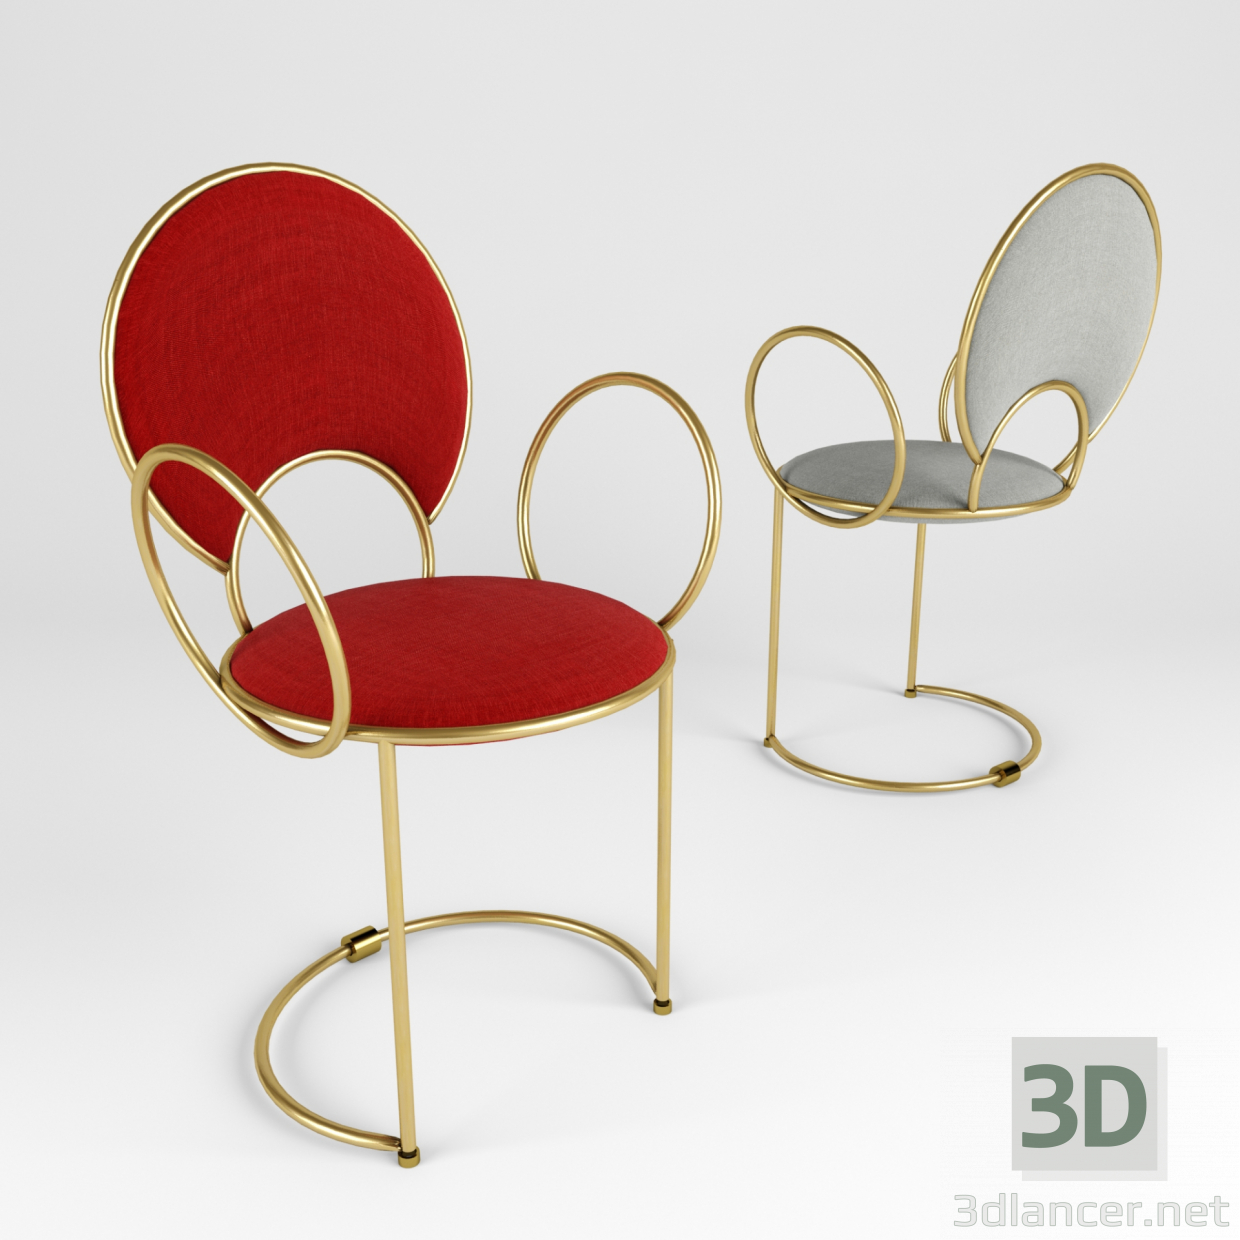 3D Hassas ilmekli kolçaklı sandalye modeli satın - render